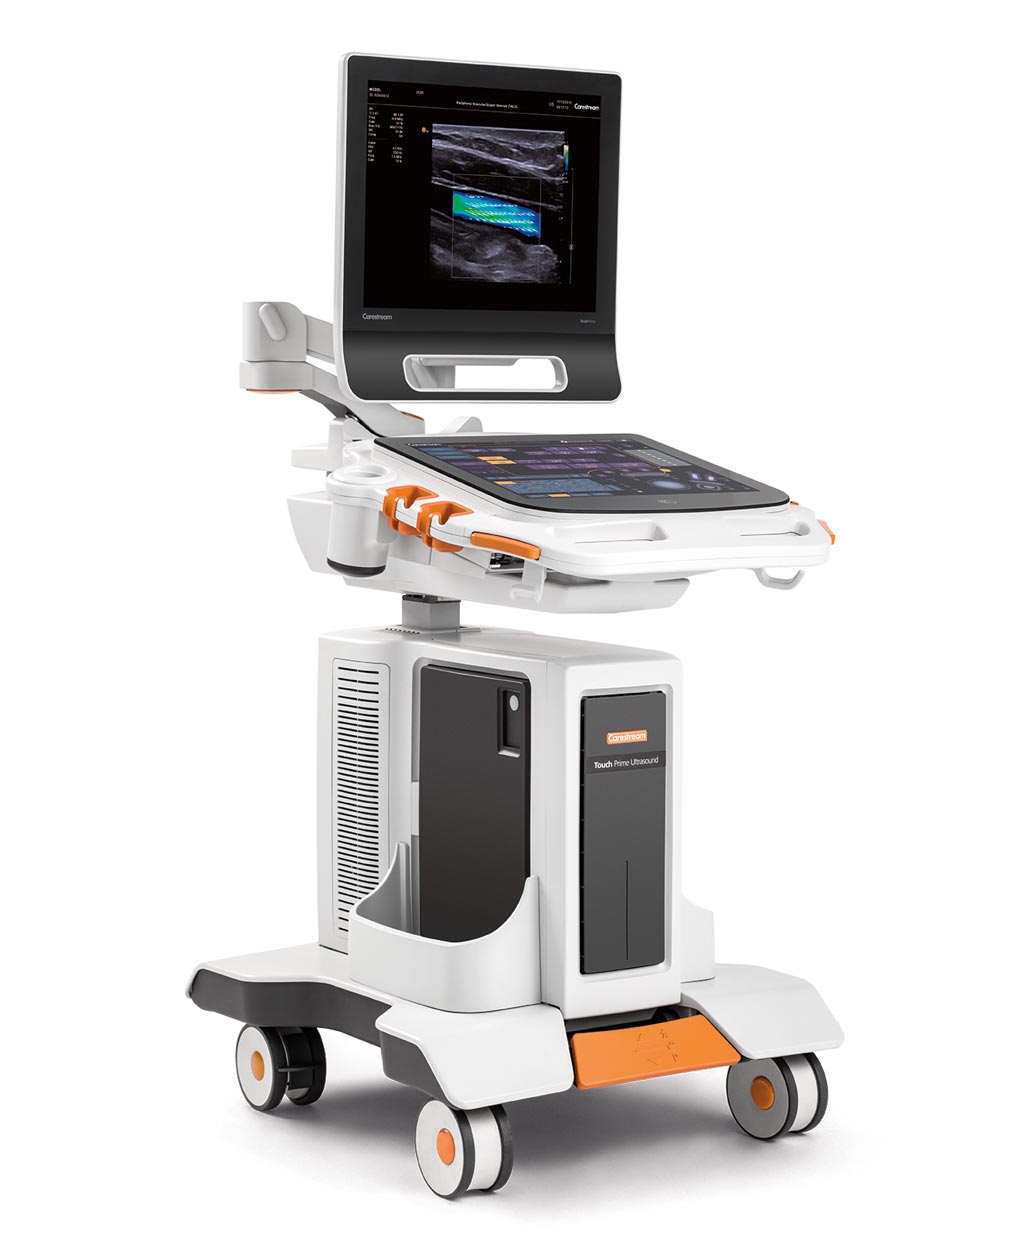 Imagen: El sistema de ultrasonido Touch Prime XE (Fotografía cortesía de Carestream Health).